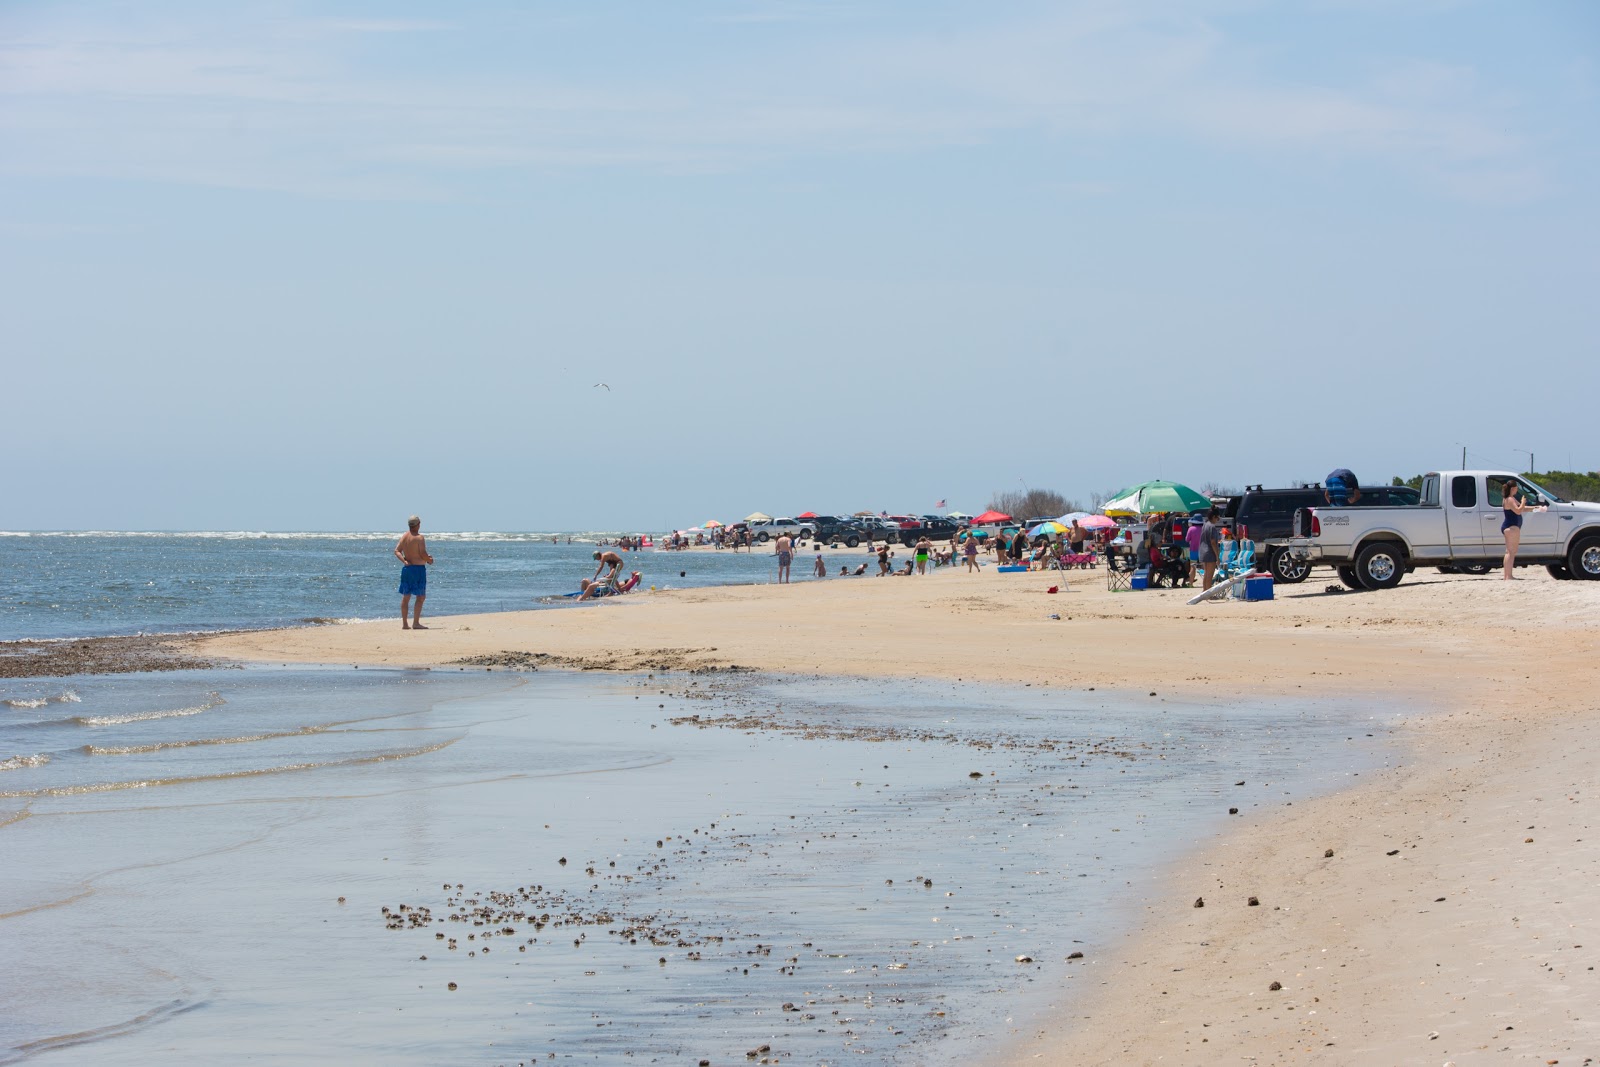 Zdjęcie ORV beach - popularne miejsce wśród znawców relaksu